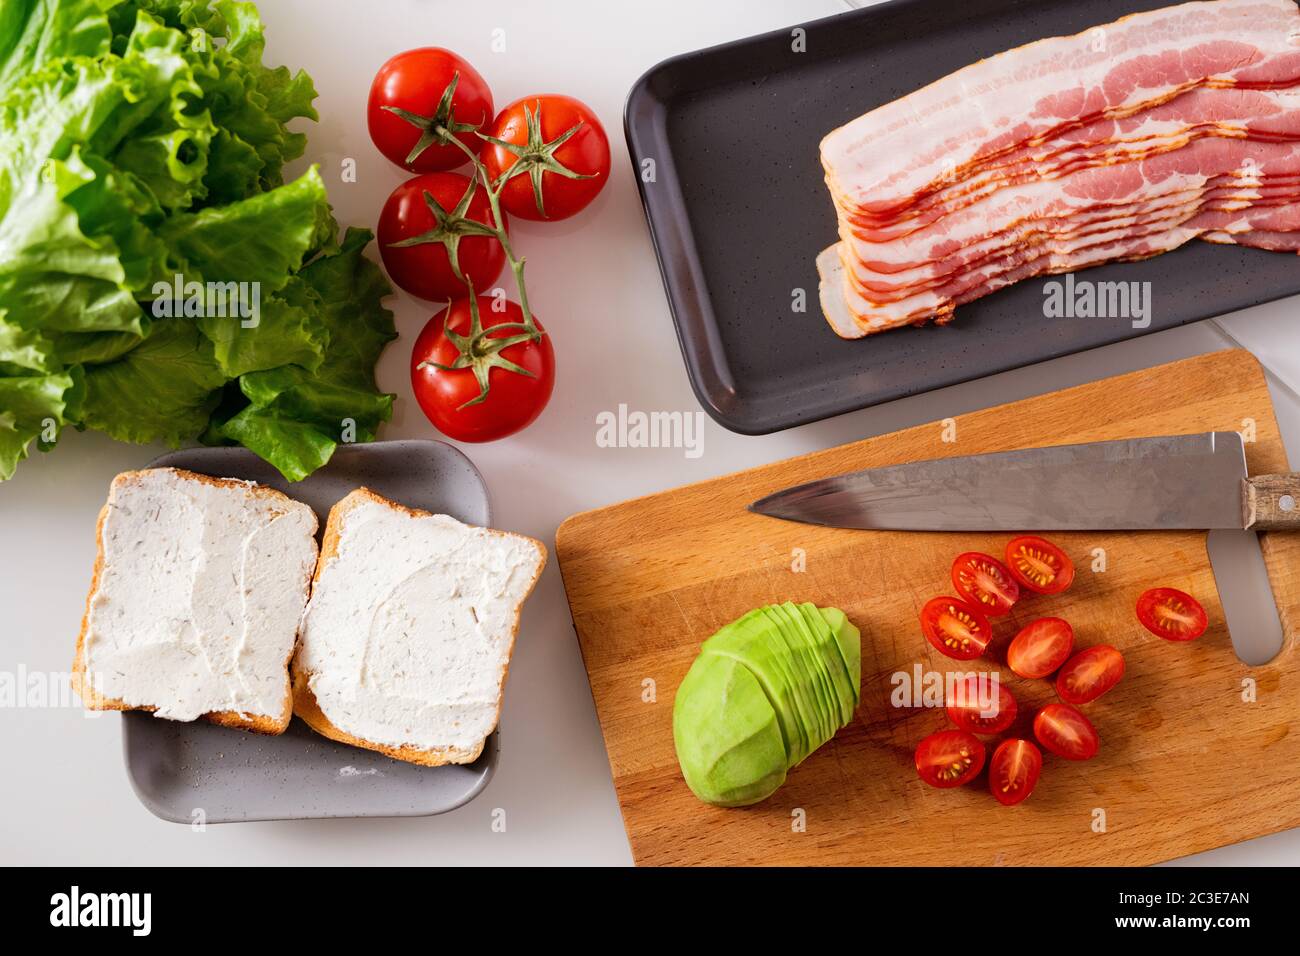 Stillleben Zusammensetzung bestehend aus zwei Sandwiches, frische Tomaten, Salat, Avocado und Tablett mit Speck Scheiben auf Küchentisch Stockfoto